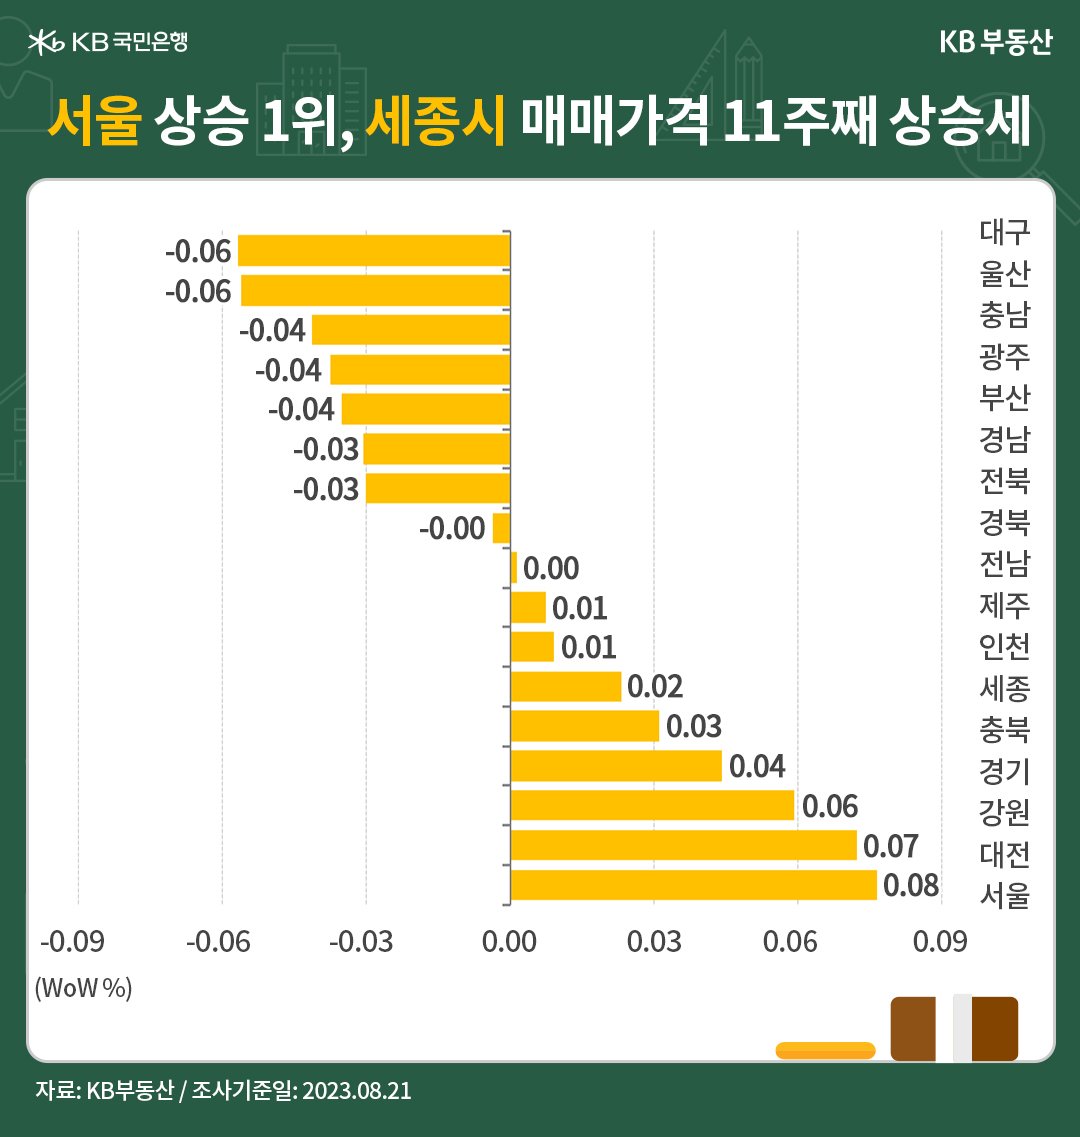 서울이 '매매가격' 1위를 차지하고 세종시가 11주째 상승세임을 나타낸 그래프, 서울은 '상승 전환'을 이어 0.08%로 상승해 1순위를 차지했으며, '전세수요'가 안정적인 세종시가 상승 1위를 차지.